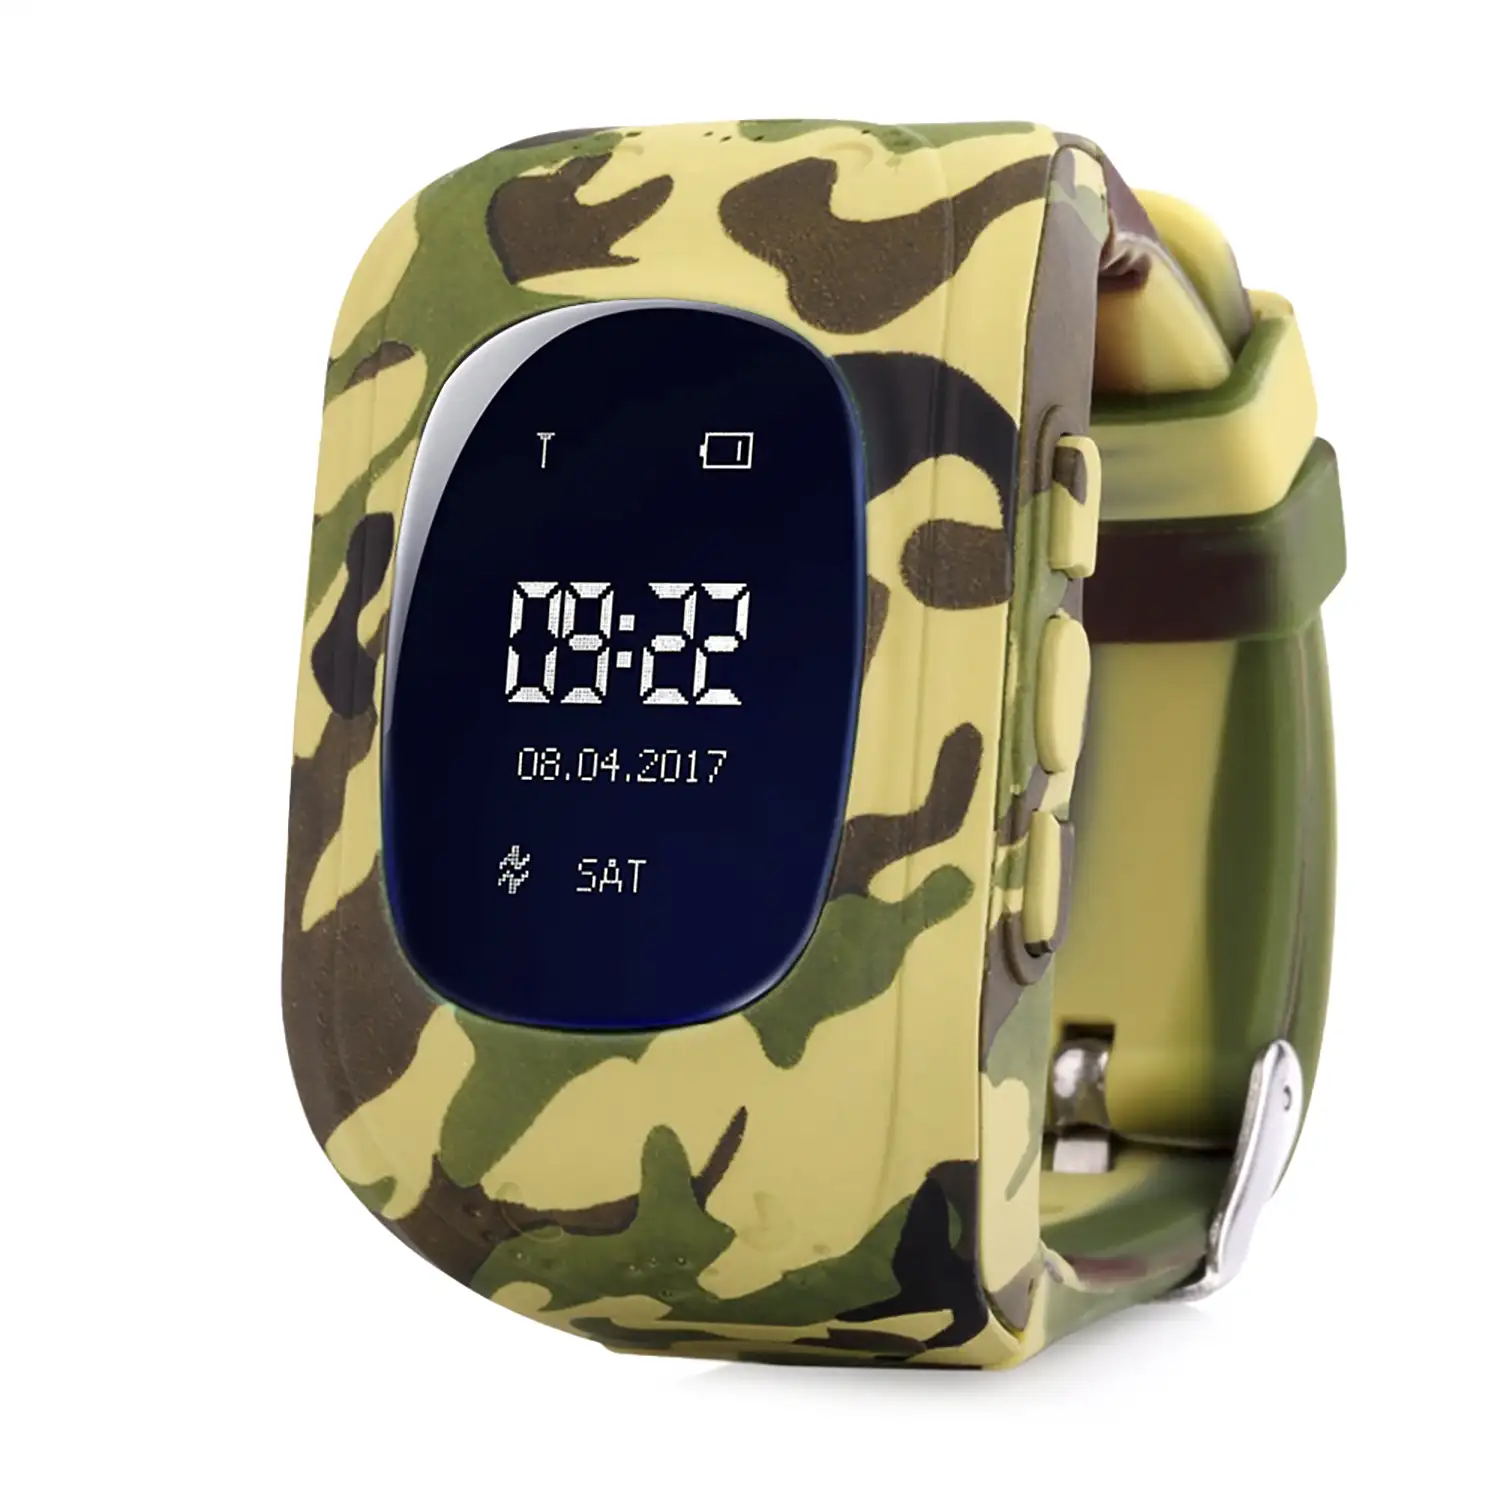 Smartwatch GPS especial para niños con cámara función de rastreo